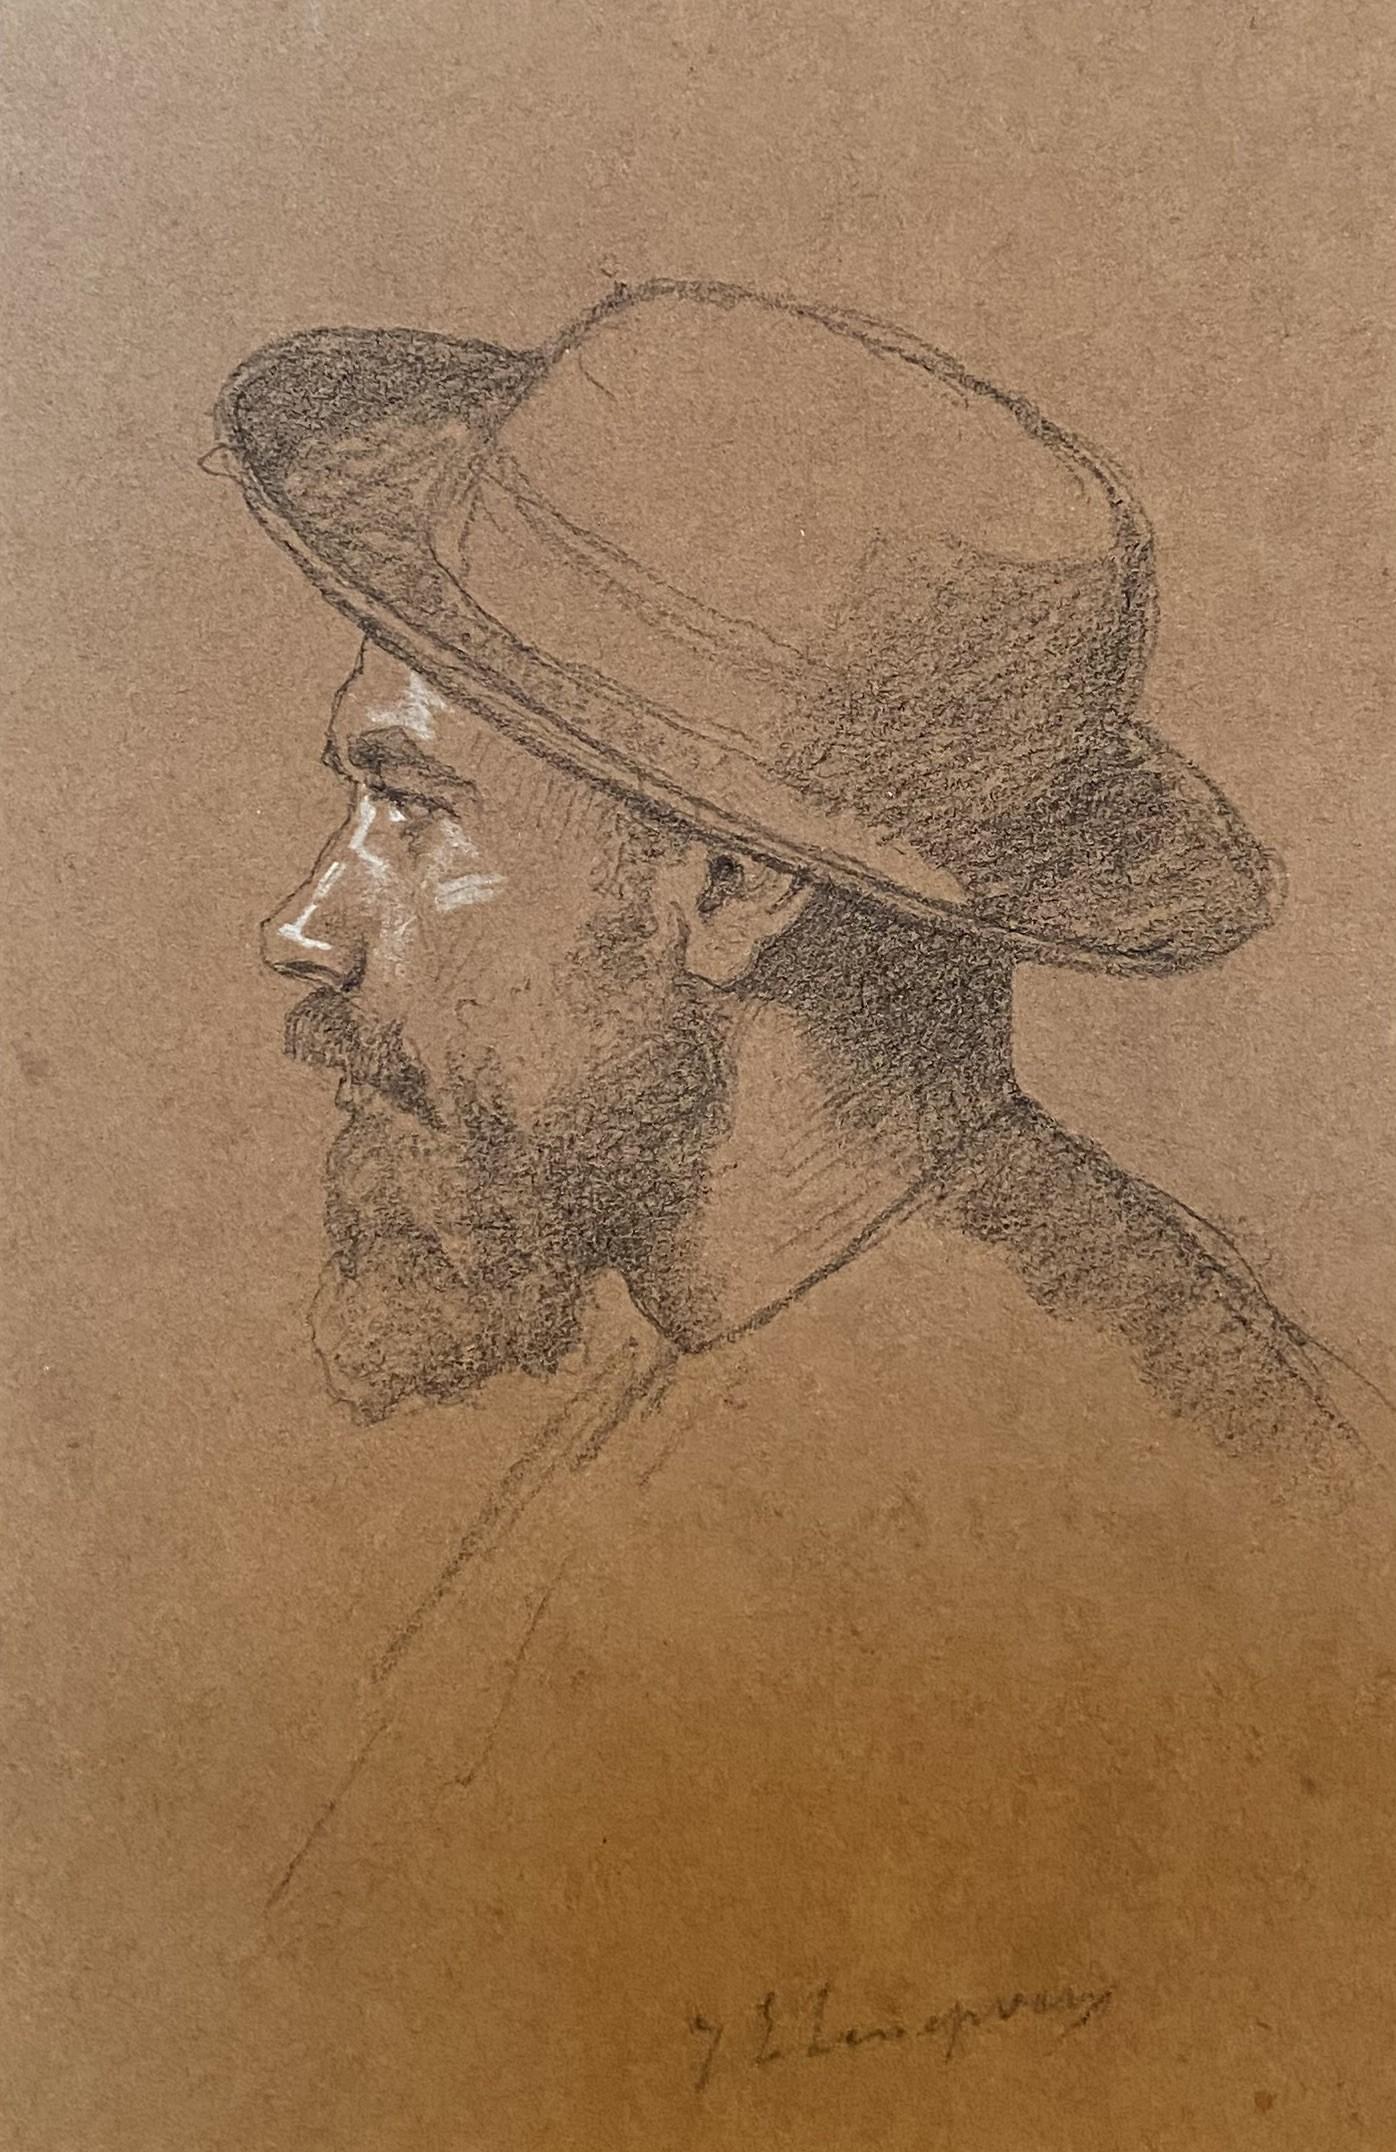 Jules-Eugène Lenepveu (1819-1898) 
Porträt eines Mannes im Profil
rechts unten signiert
Bleistift und weiße Gouache-Spitzungen auf Papier
19.5 x 13 cm
Gerahmt:  29 x 22.7 cm

Jules-Eugène Lenepveu ist natürlich vor allem für seine großformatigen